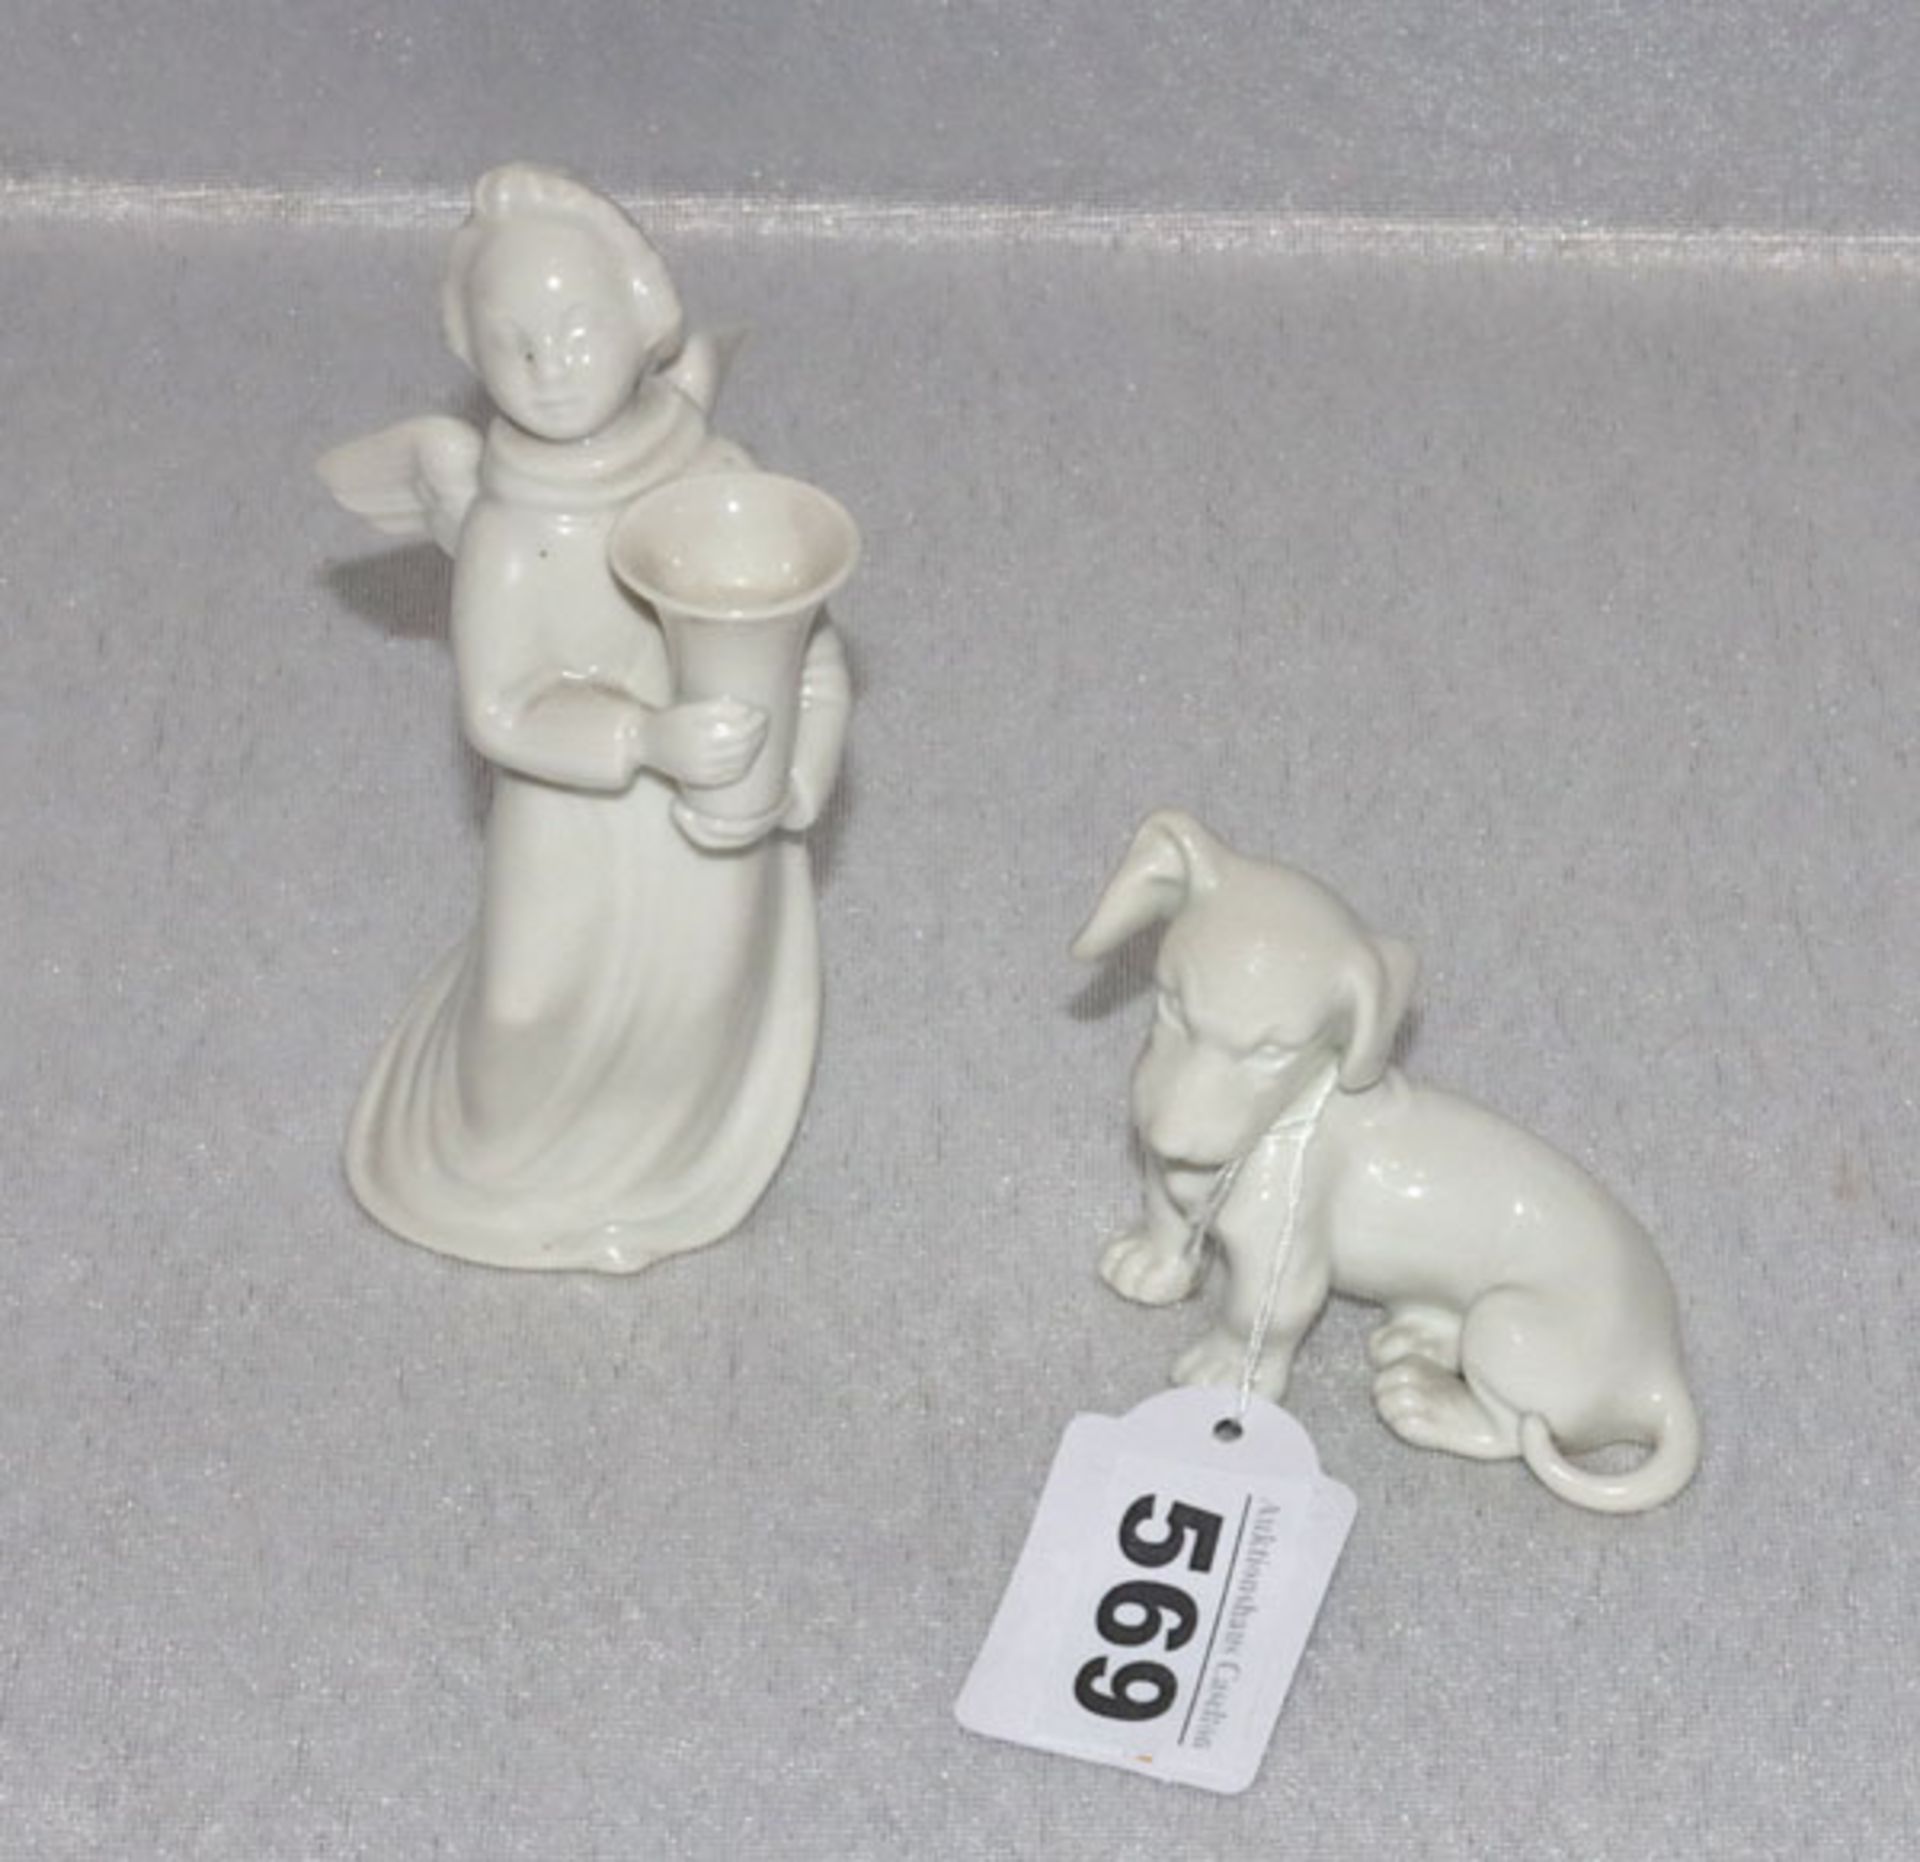 Porzellan Tierfigur 'Hund', H 6 cm, Wien ? und 'Leuchterengel', H 12 cm, beide weiß glasiert